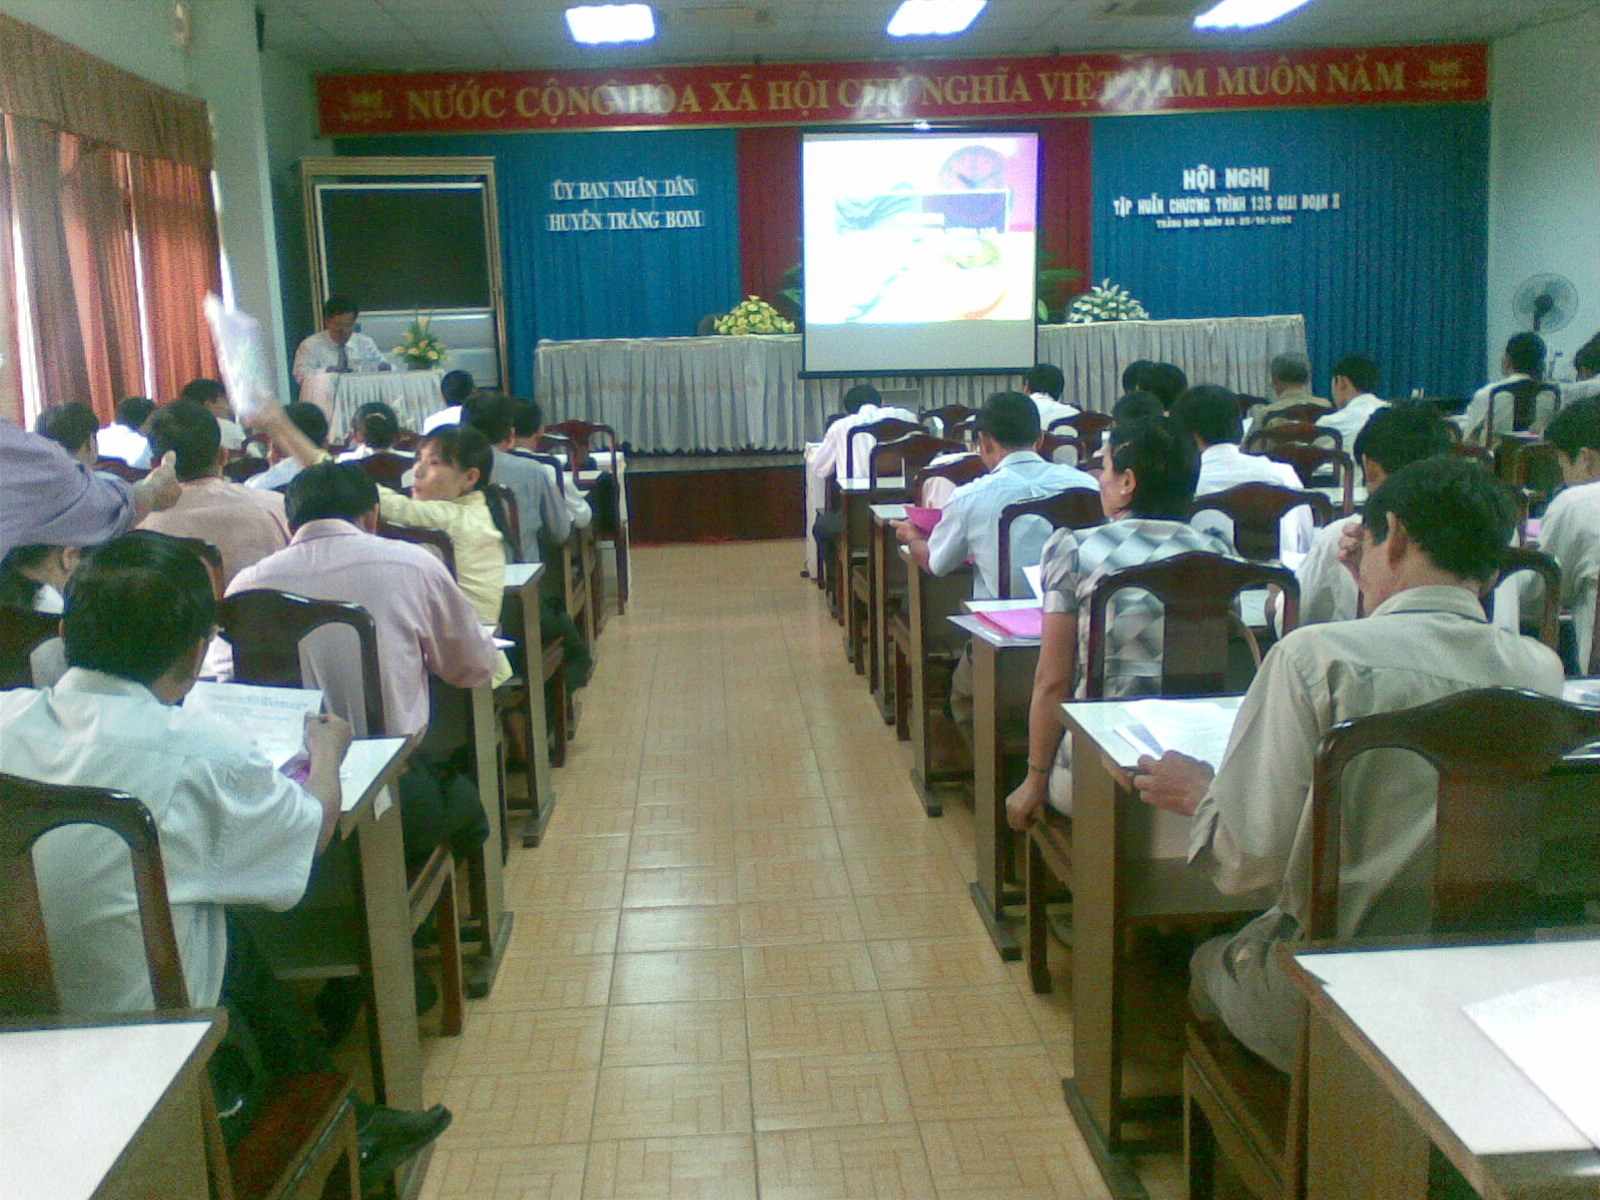 Hội nghị tập huấn thực hiện Chương trình 135 giai đoạn I tại huyện Trảng Bom- Đồng Nai giúp nâng cao năng lực cho cán bộ thực hiện Chương trình 135